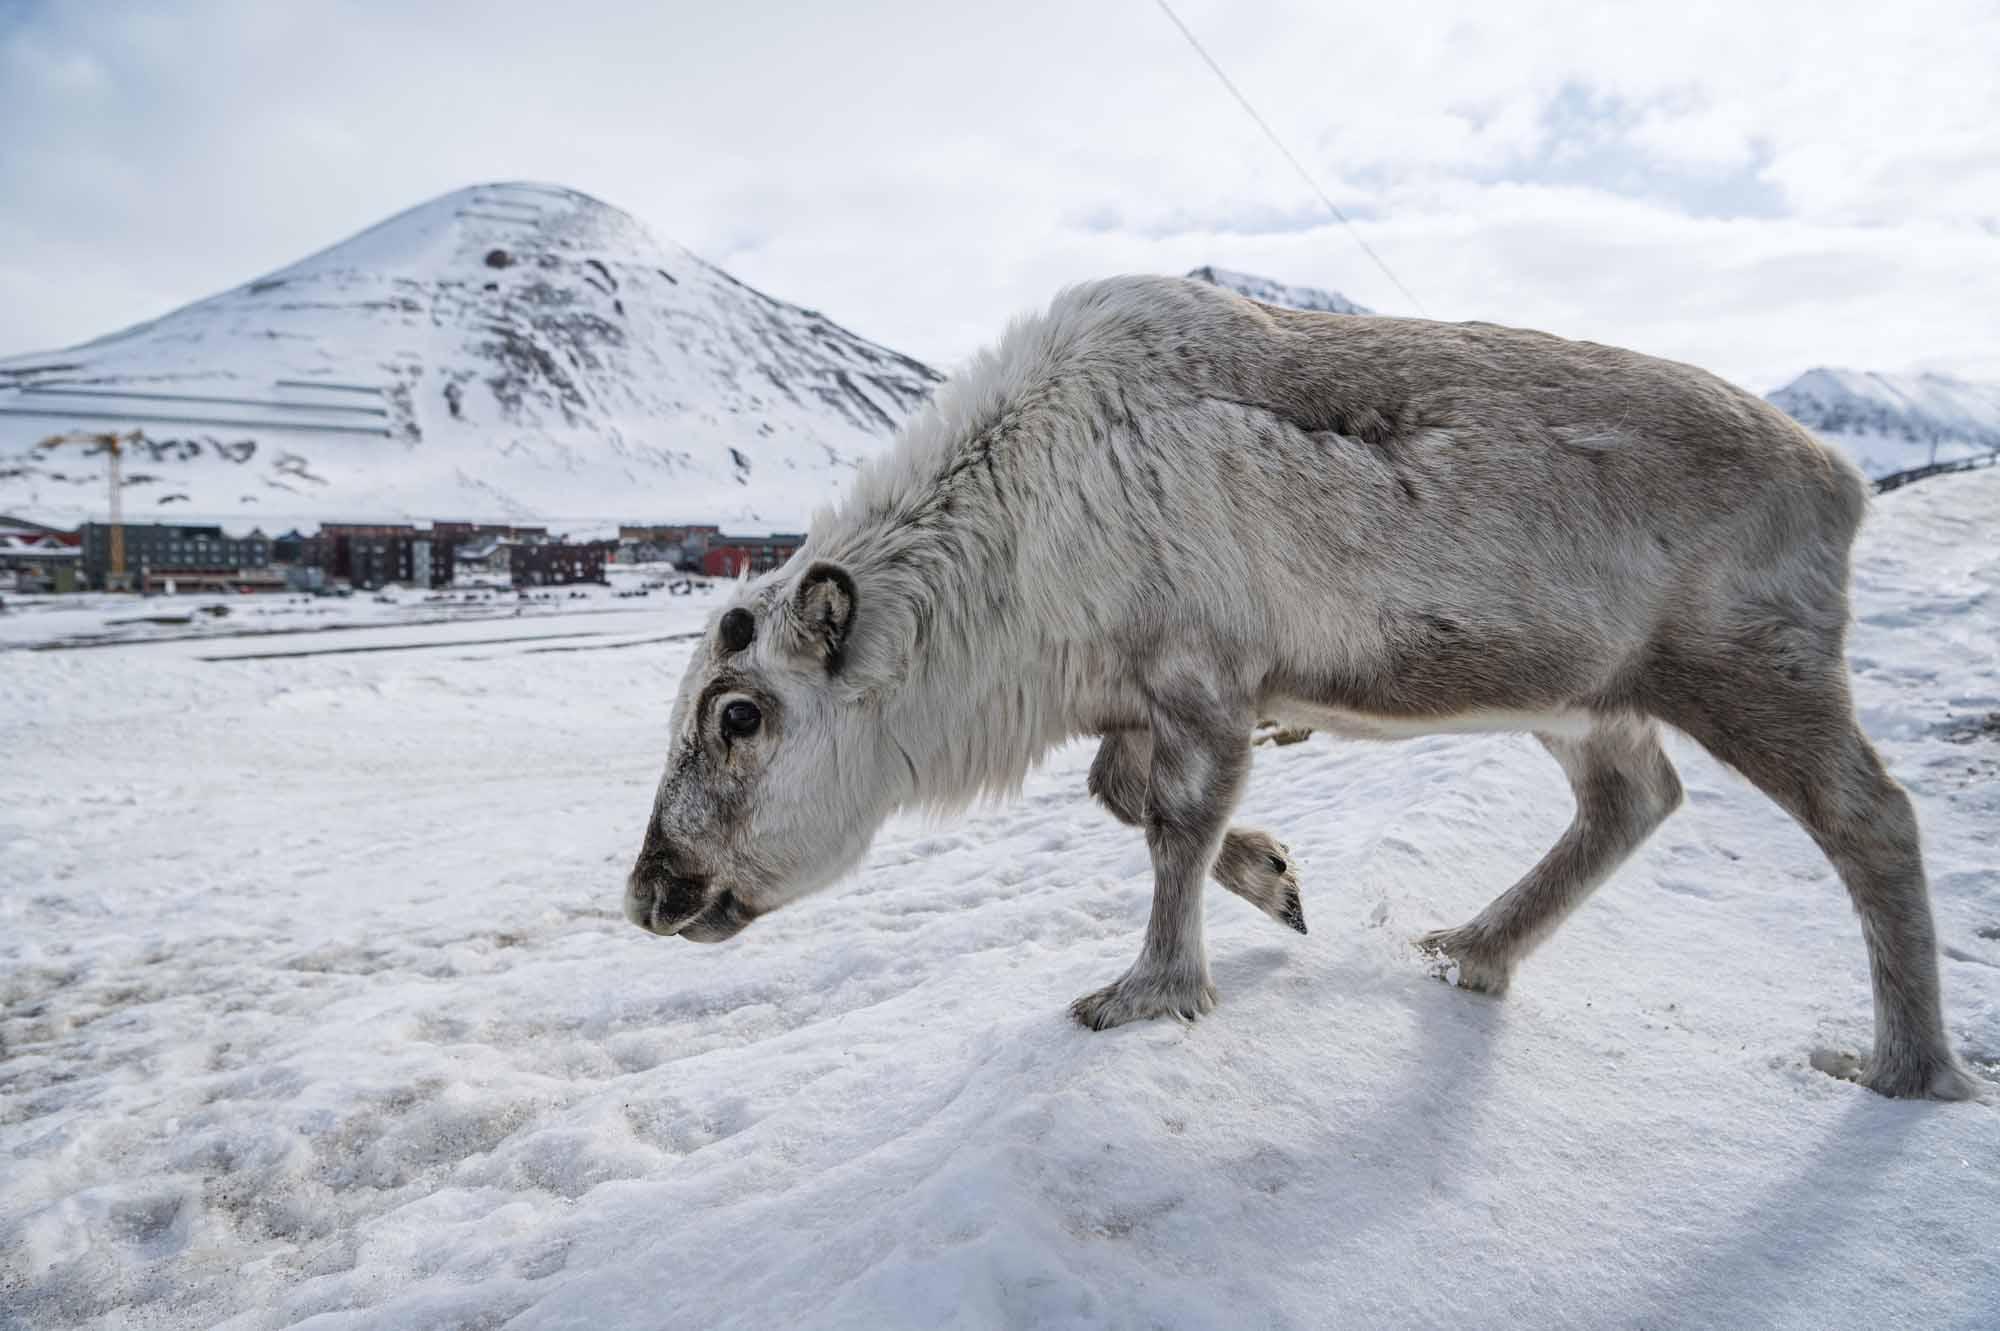 Refuge des ours polaires, du soleil de minuit et des aurores boréales, un archipel norvégien perché dans les hauteurs de l'Arctique tente de trouver un moyen de tirer profit de sa nature vierge sans la ruiner. L'archipel du Svalbard, situé à 1 300 kilomètres du pôle Nord et accessible par des vols commerciaux, offre aux visiteurs de vastes étendues de nature vierge, avec des montagnes majestueuses, des glaciers et des fjords gelés. Ou plutôt, les fjords étaient autrefois gelés. Le Svalbard est aujourd'hui en première ligne du changement climatique, l'Arctique se réchauffant trois fois plus vite que la planète 